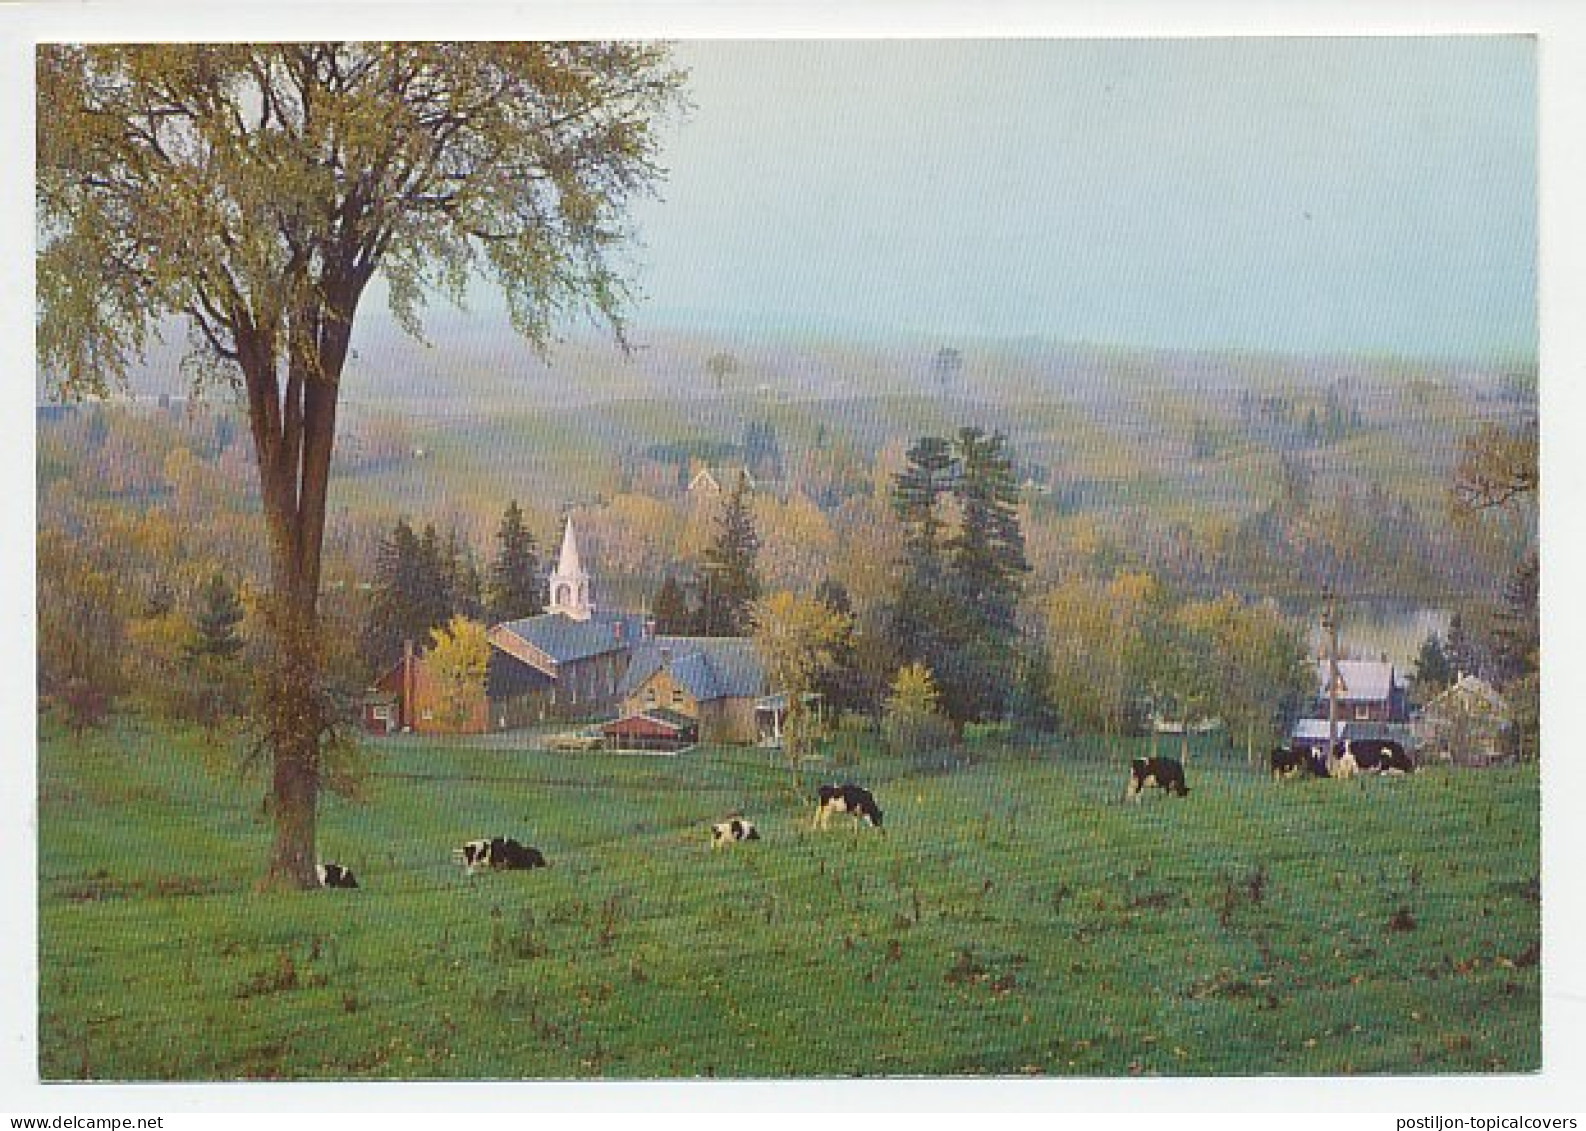 Postal Stationery Canada Cows - Farm - Church - Ferme